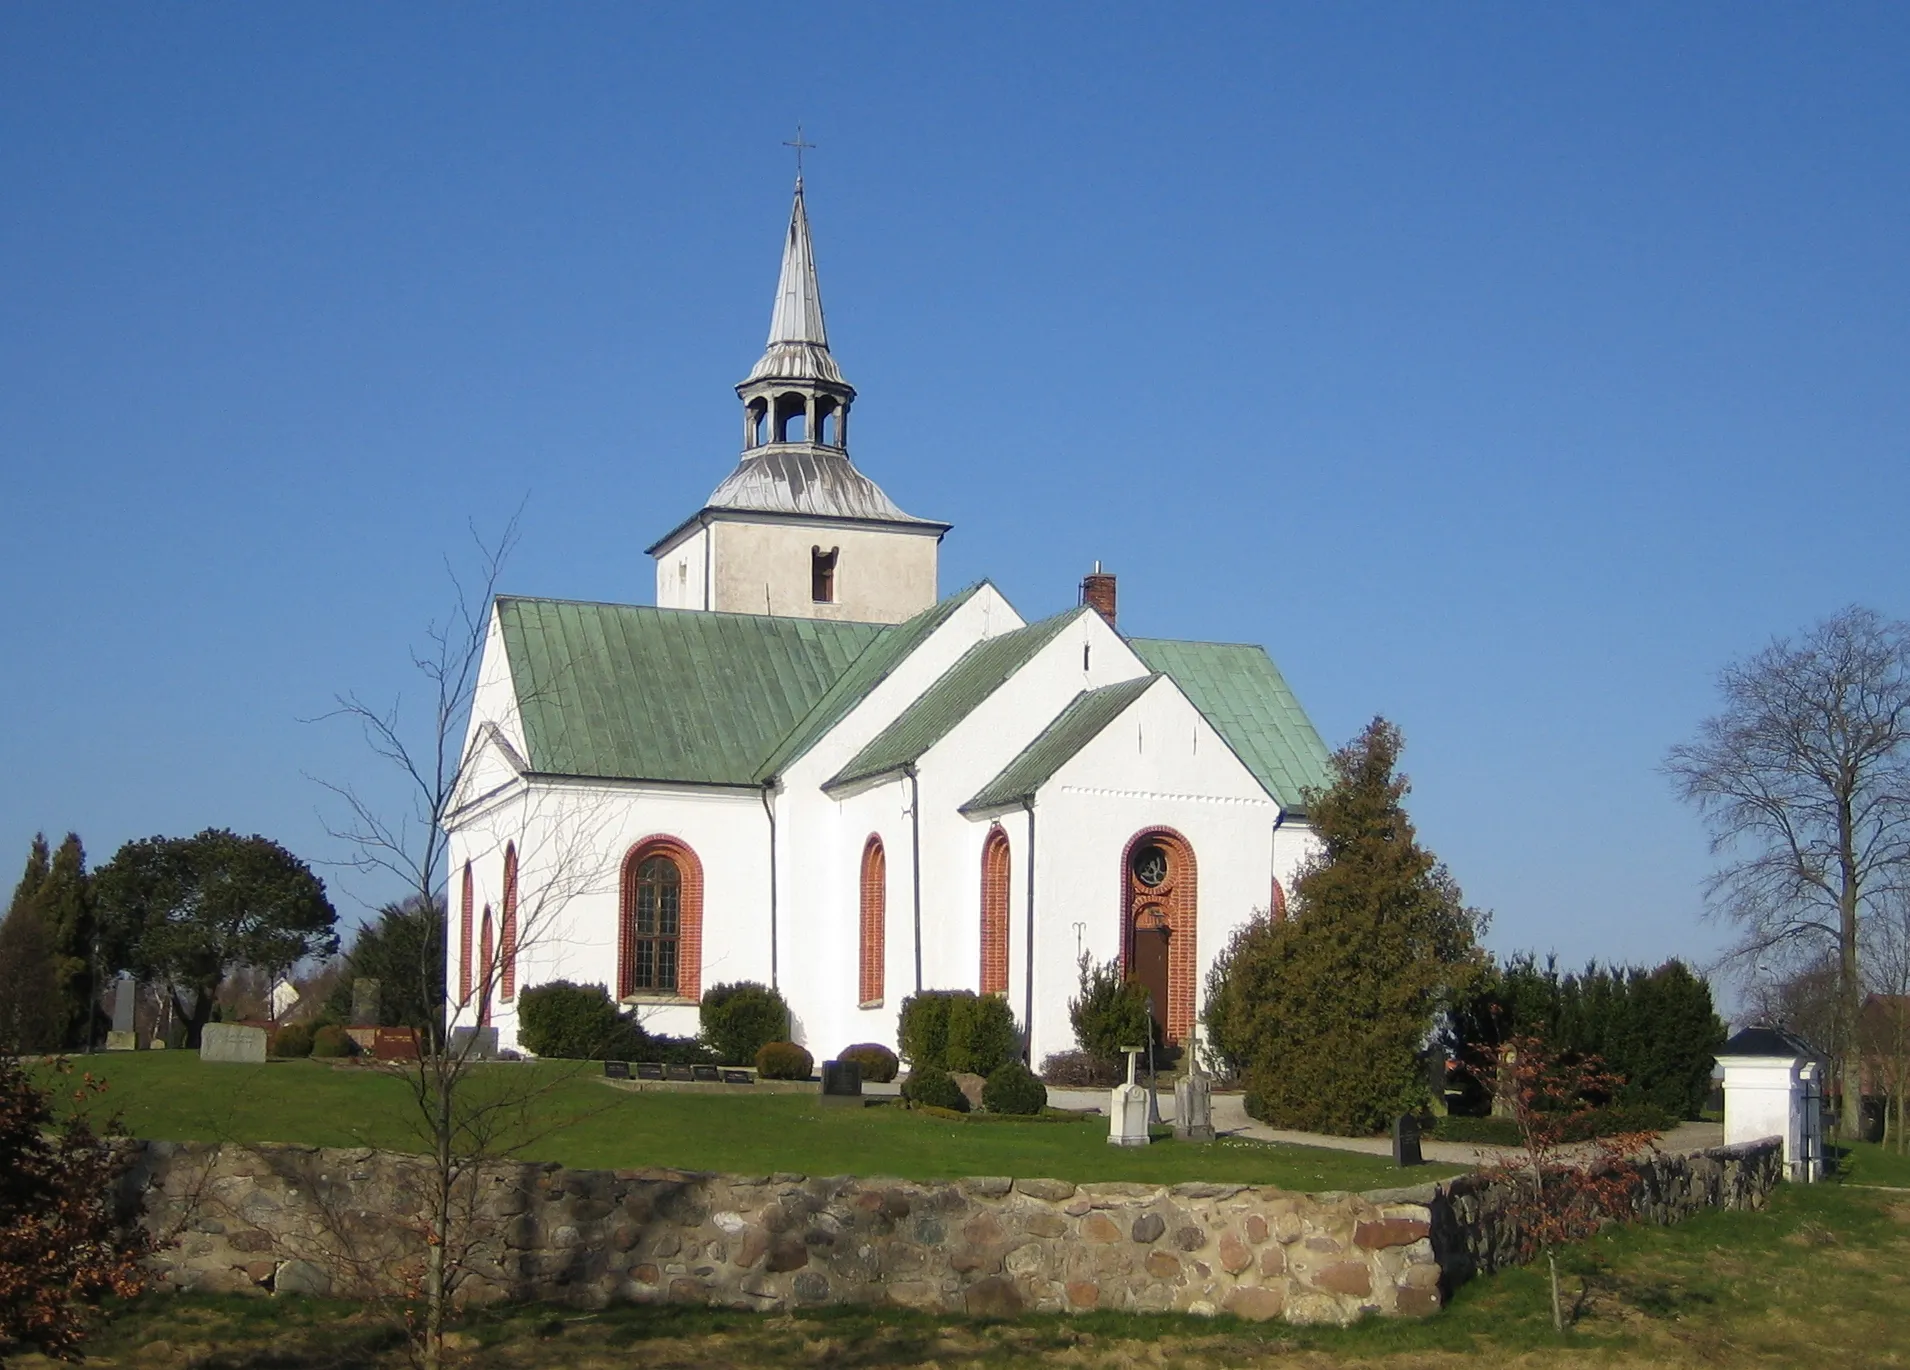 Photo showing: Reslövs kyrka in Skåne, Sweden